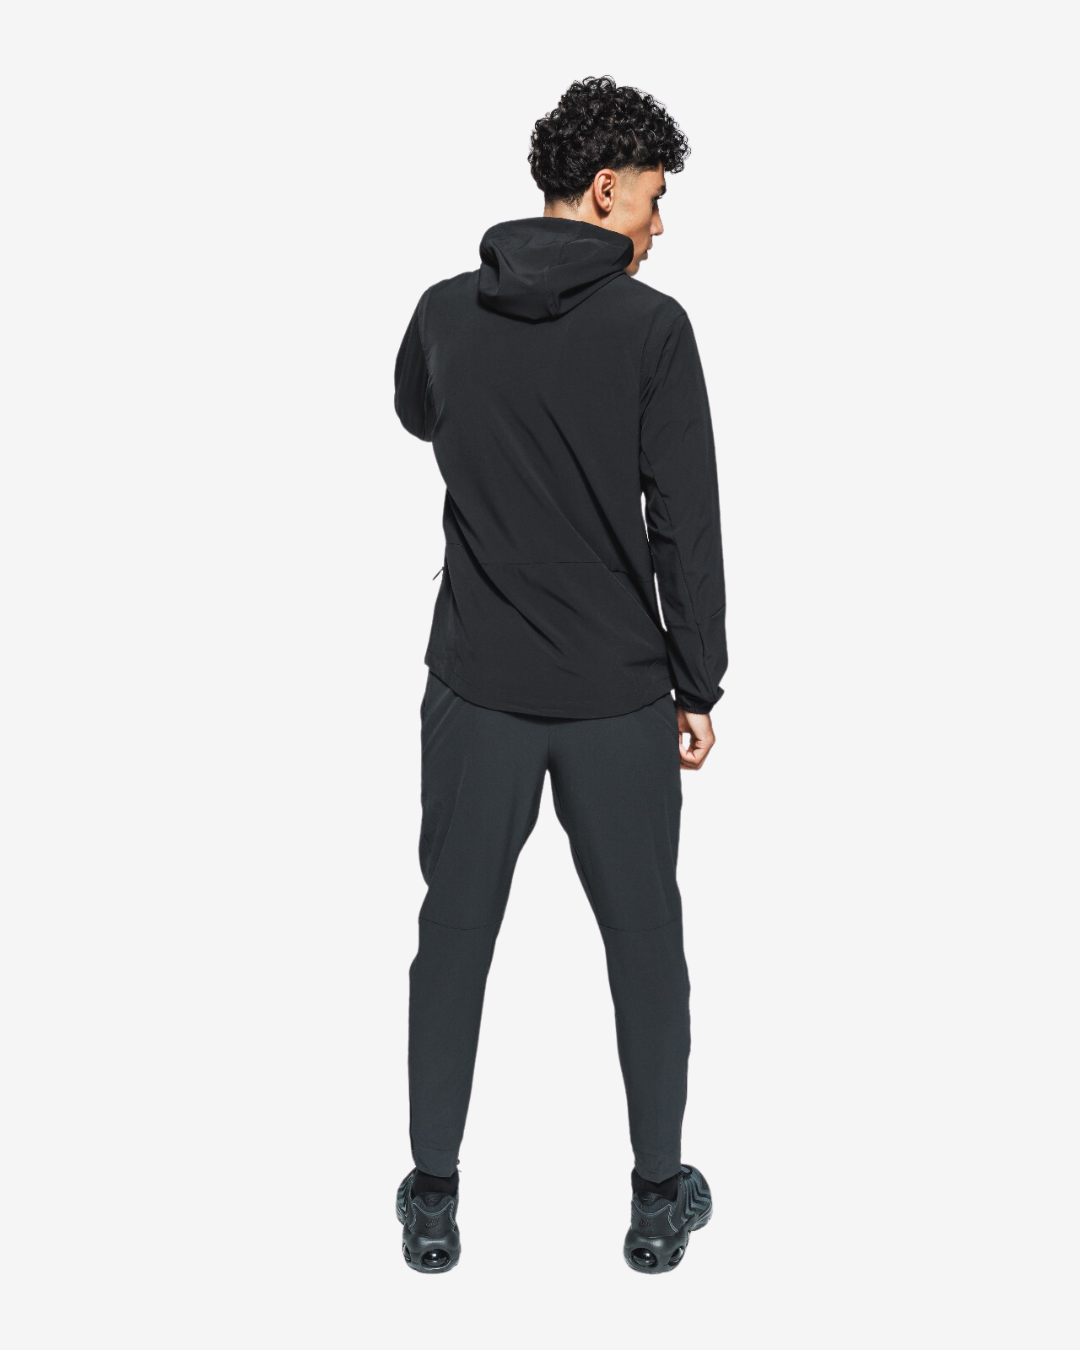 Survêtement Nike Form - Noir